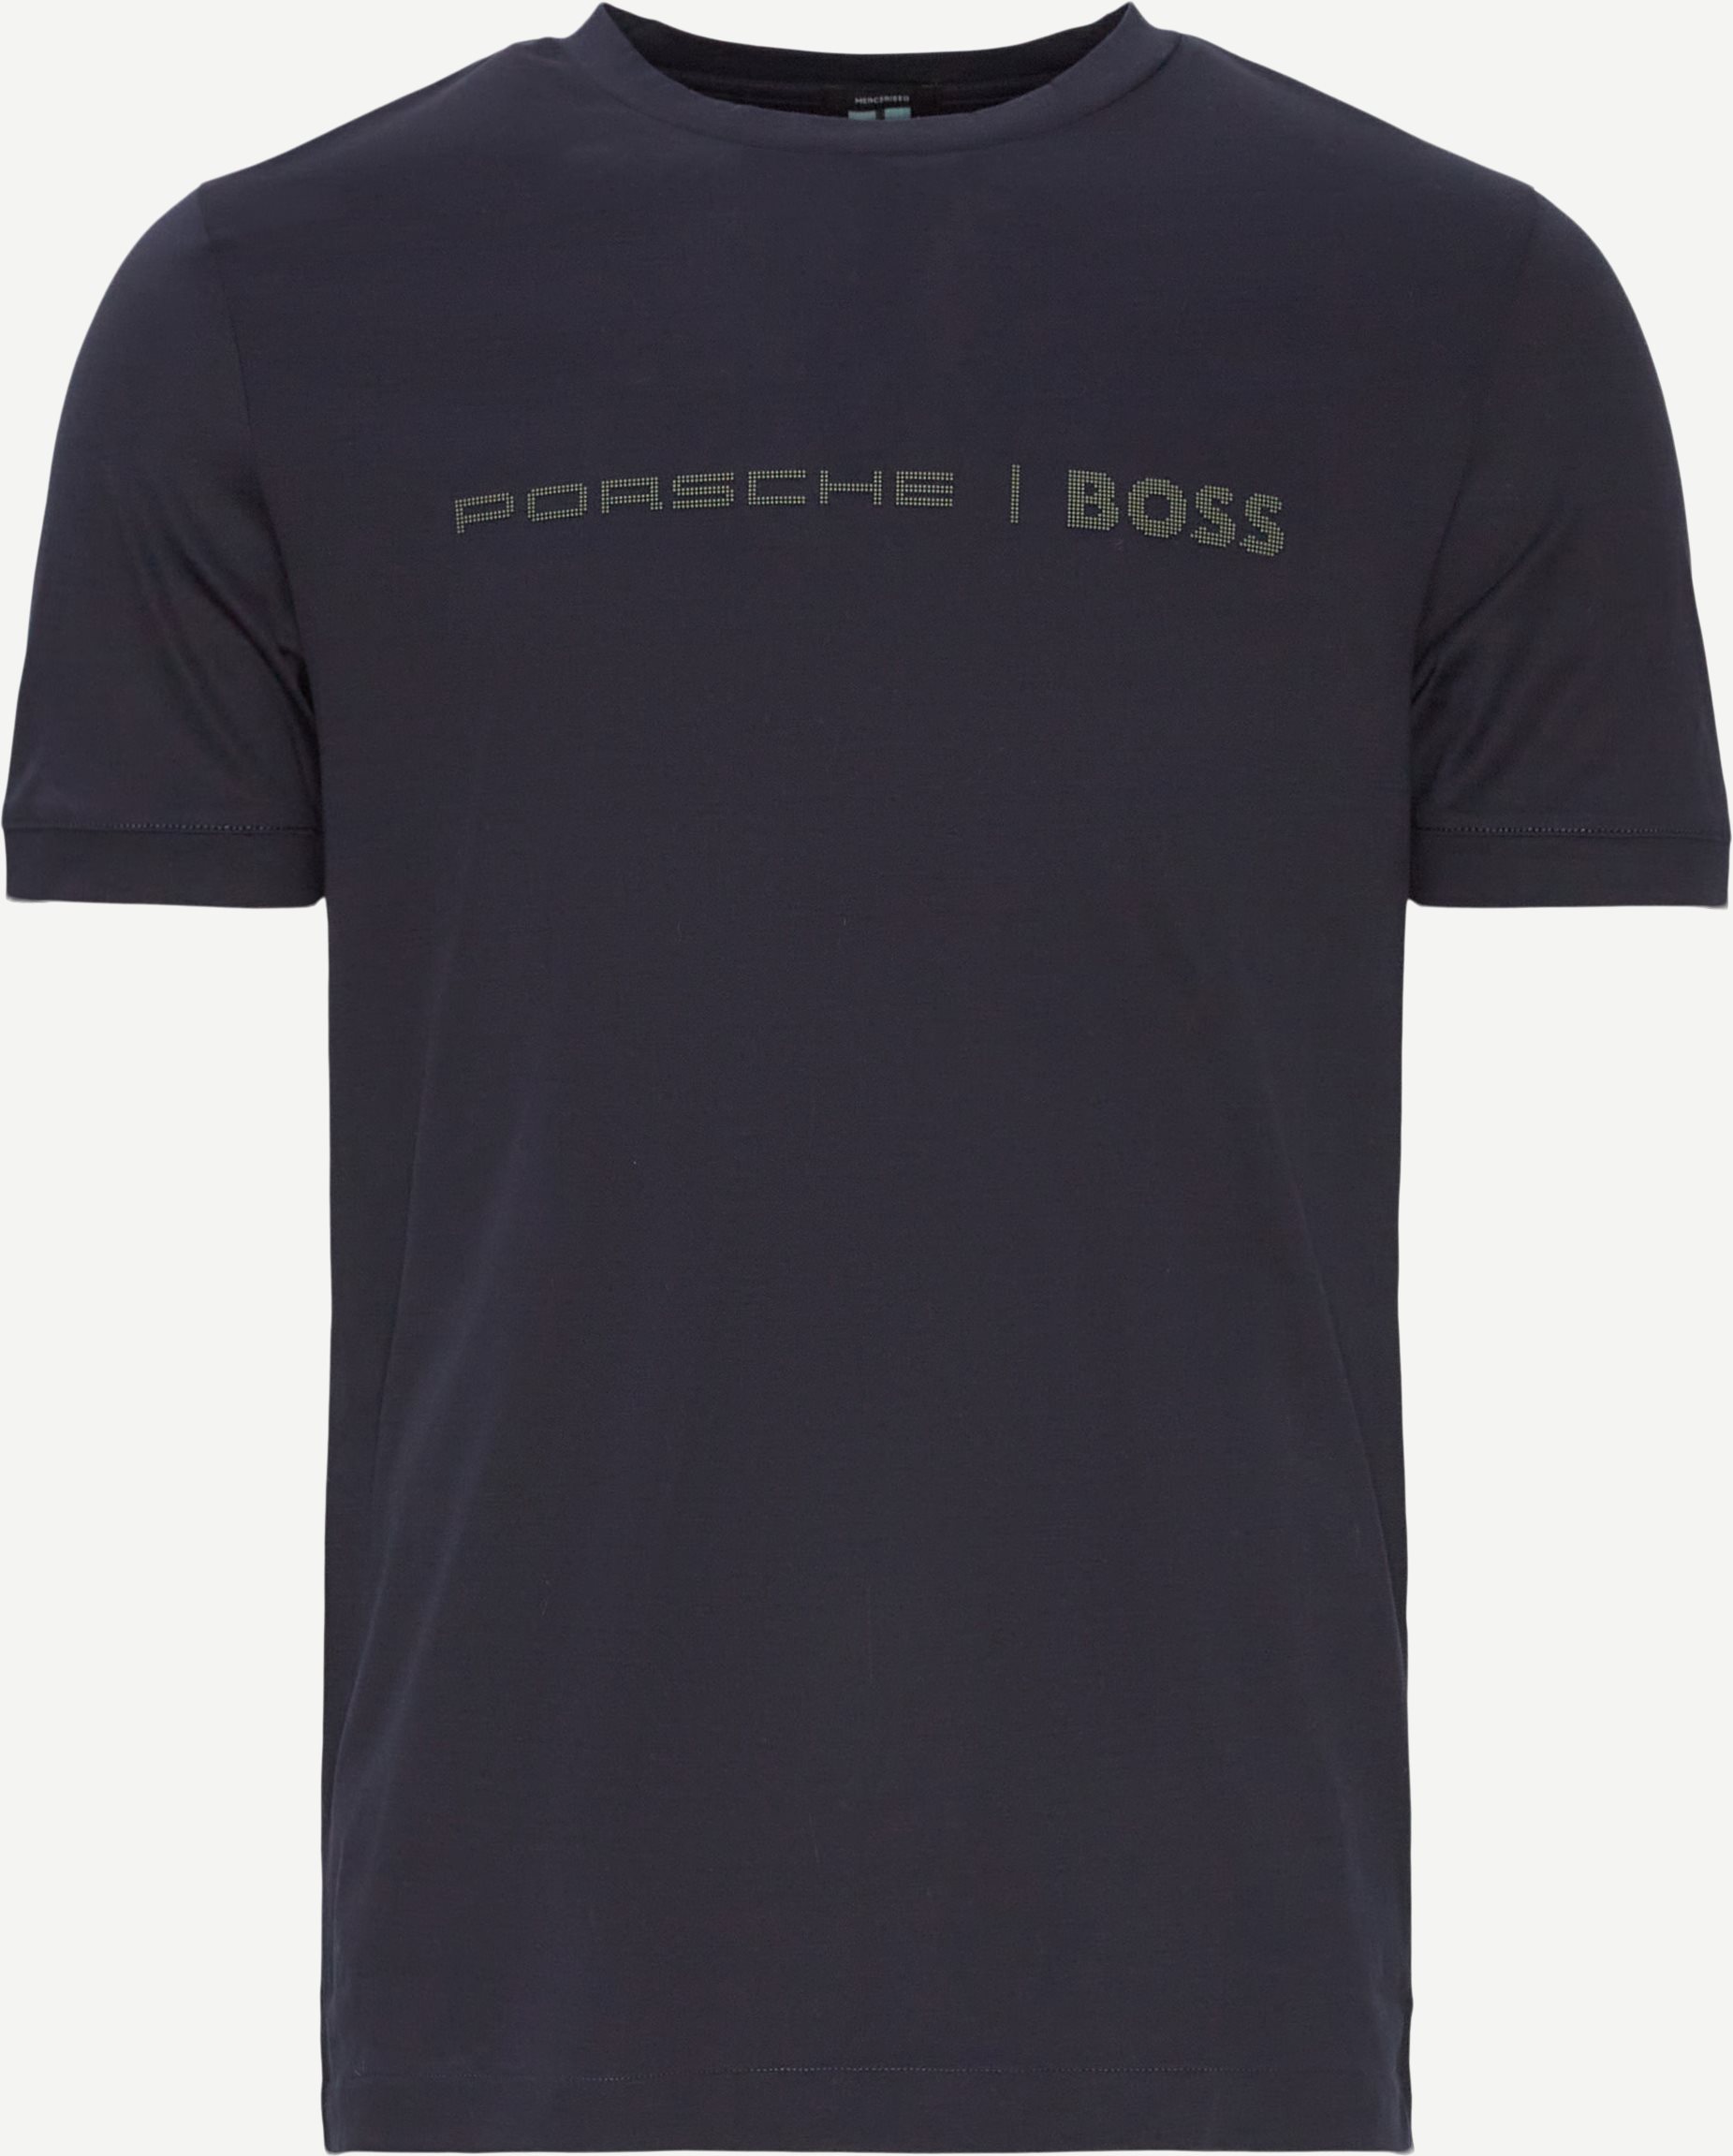 Tessler Porsche T-shirt - T-shirts - Slim fit - Blå